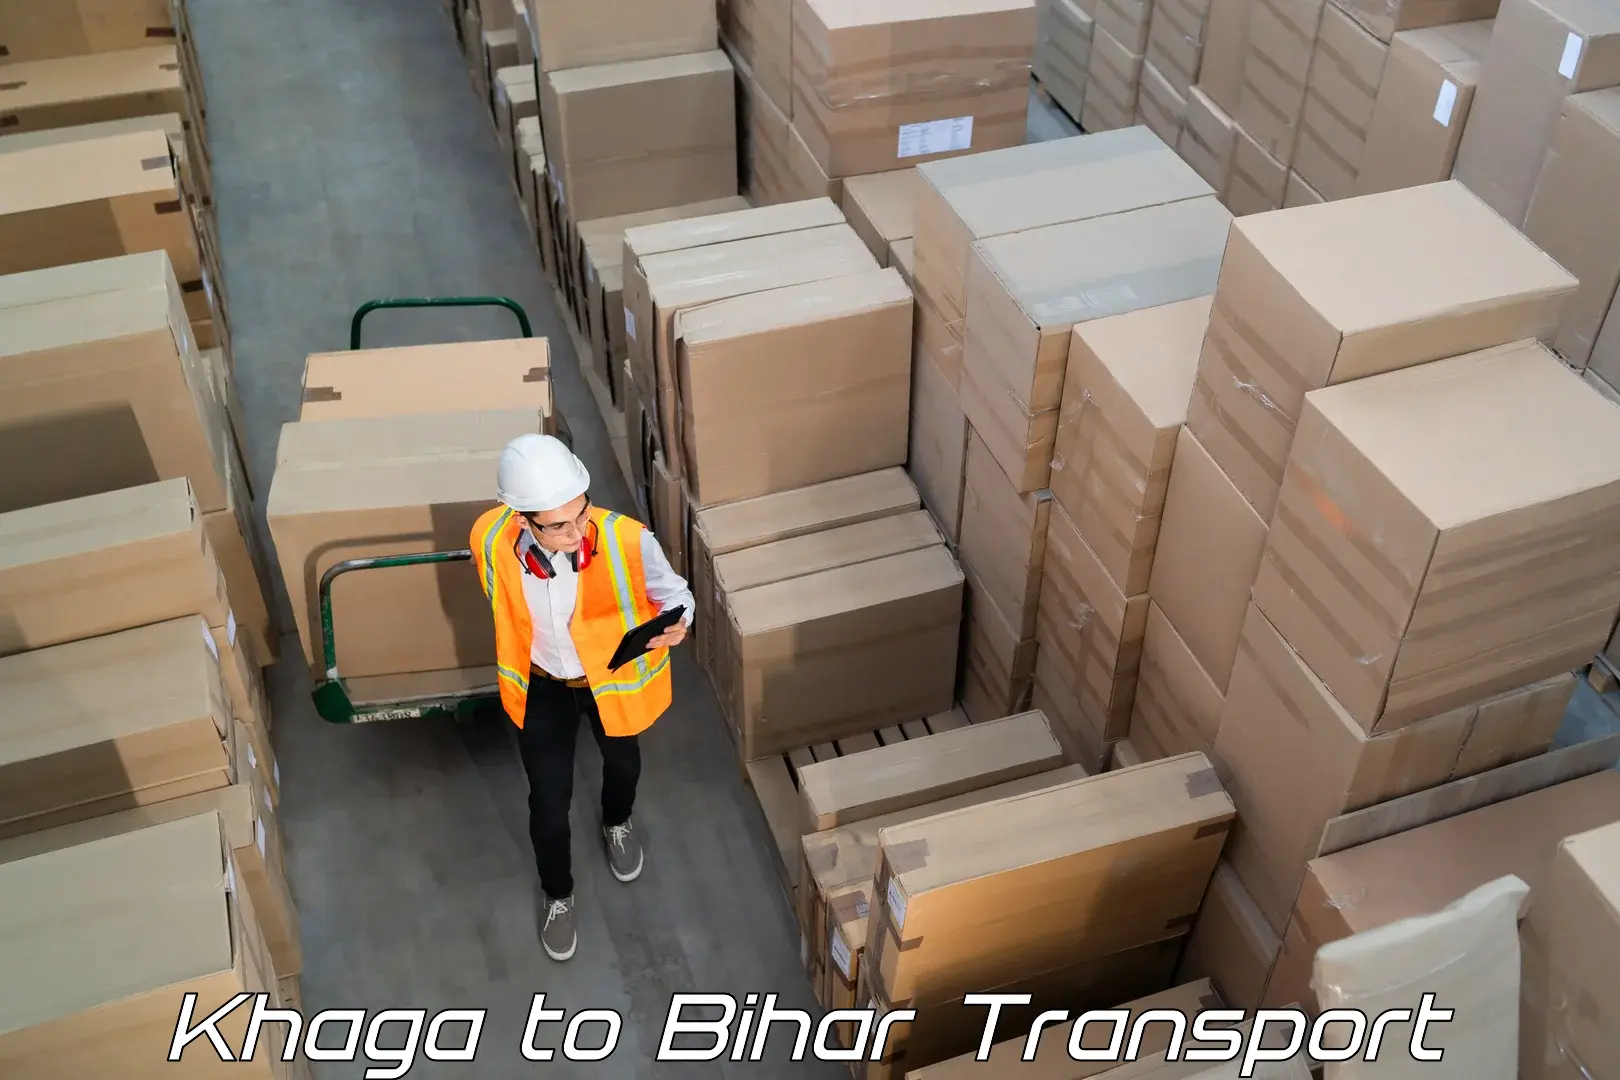 Bike shipping service Khaga to Saraiya